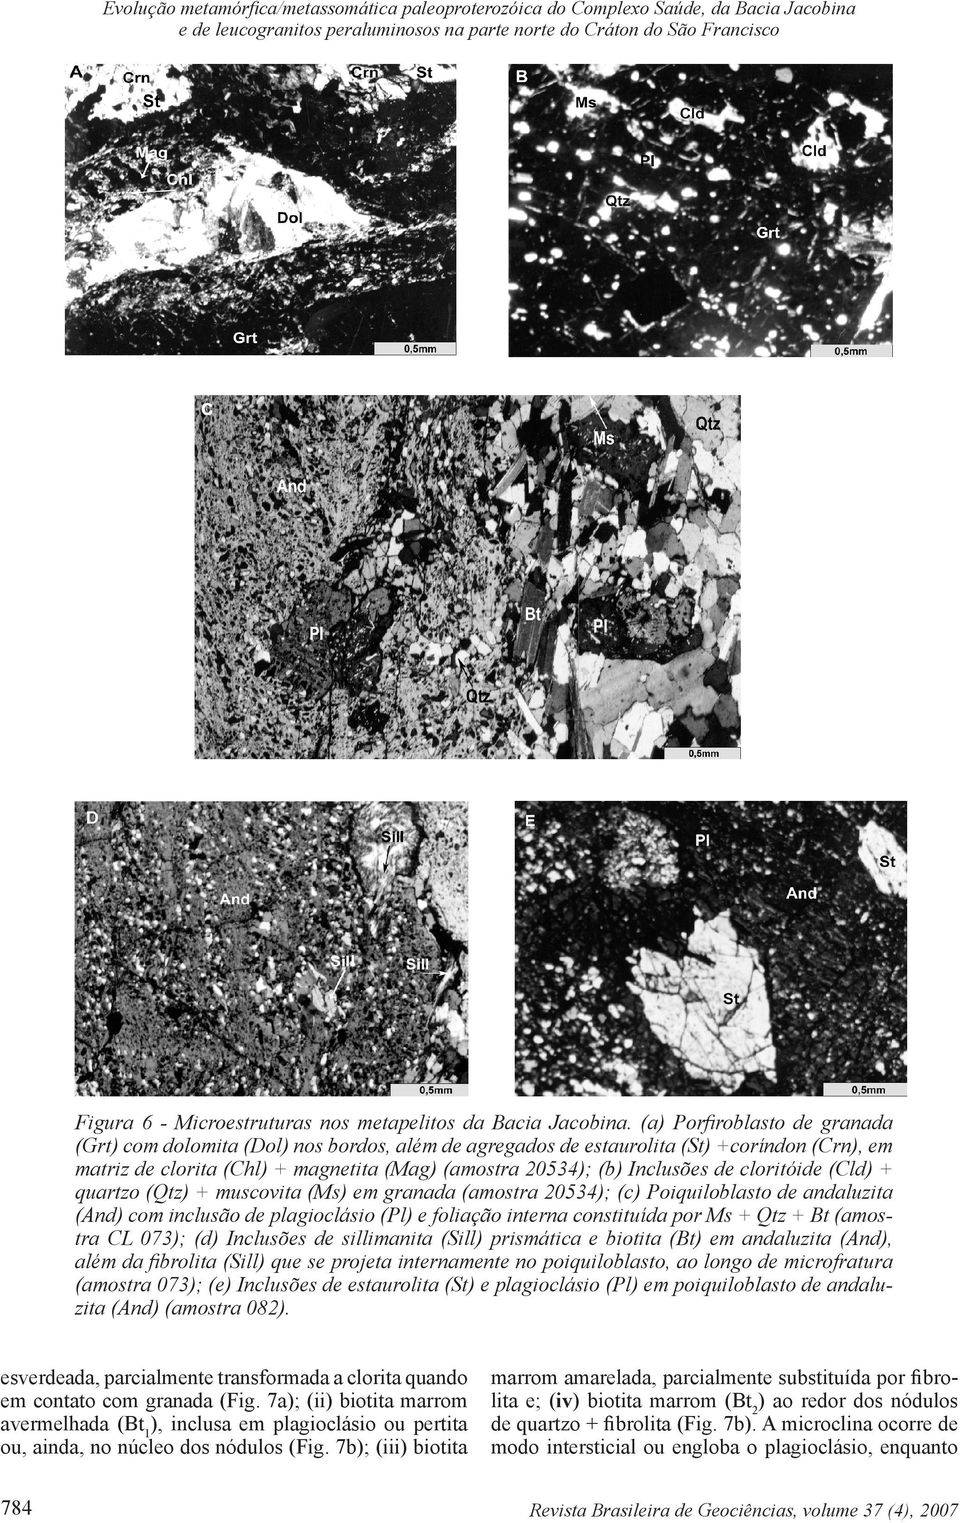 (a) Porfiroblasto de granada (Grt) com dolomita (Dol) nos bordos, além de agregados de estaurolita (St) +coríndon (Crn), em matriz de clorita (Chl) + magnetita (Mag) (amostra 20534); (b) Inclusões de